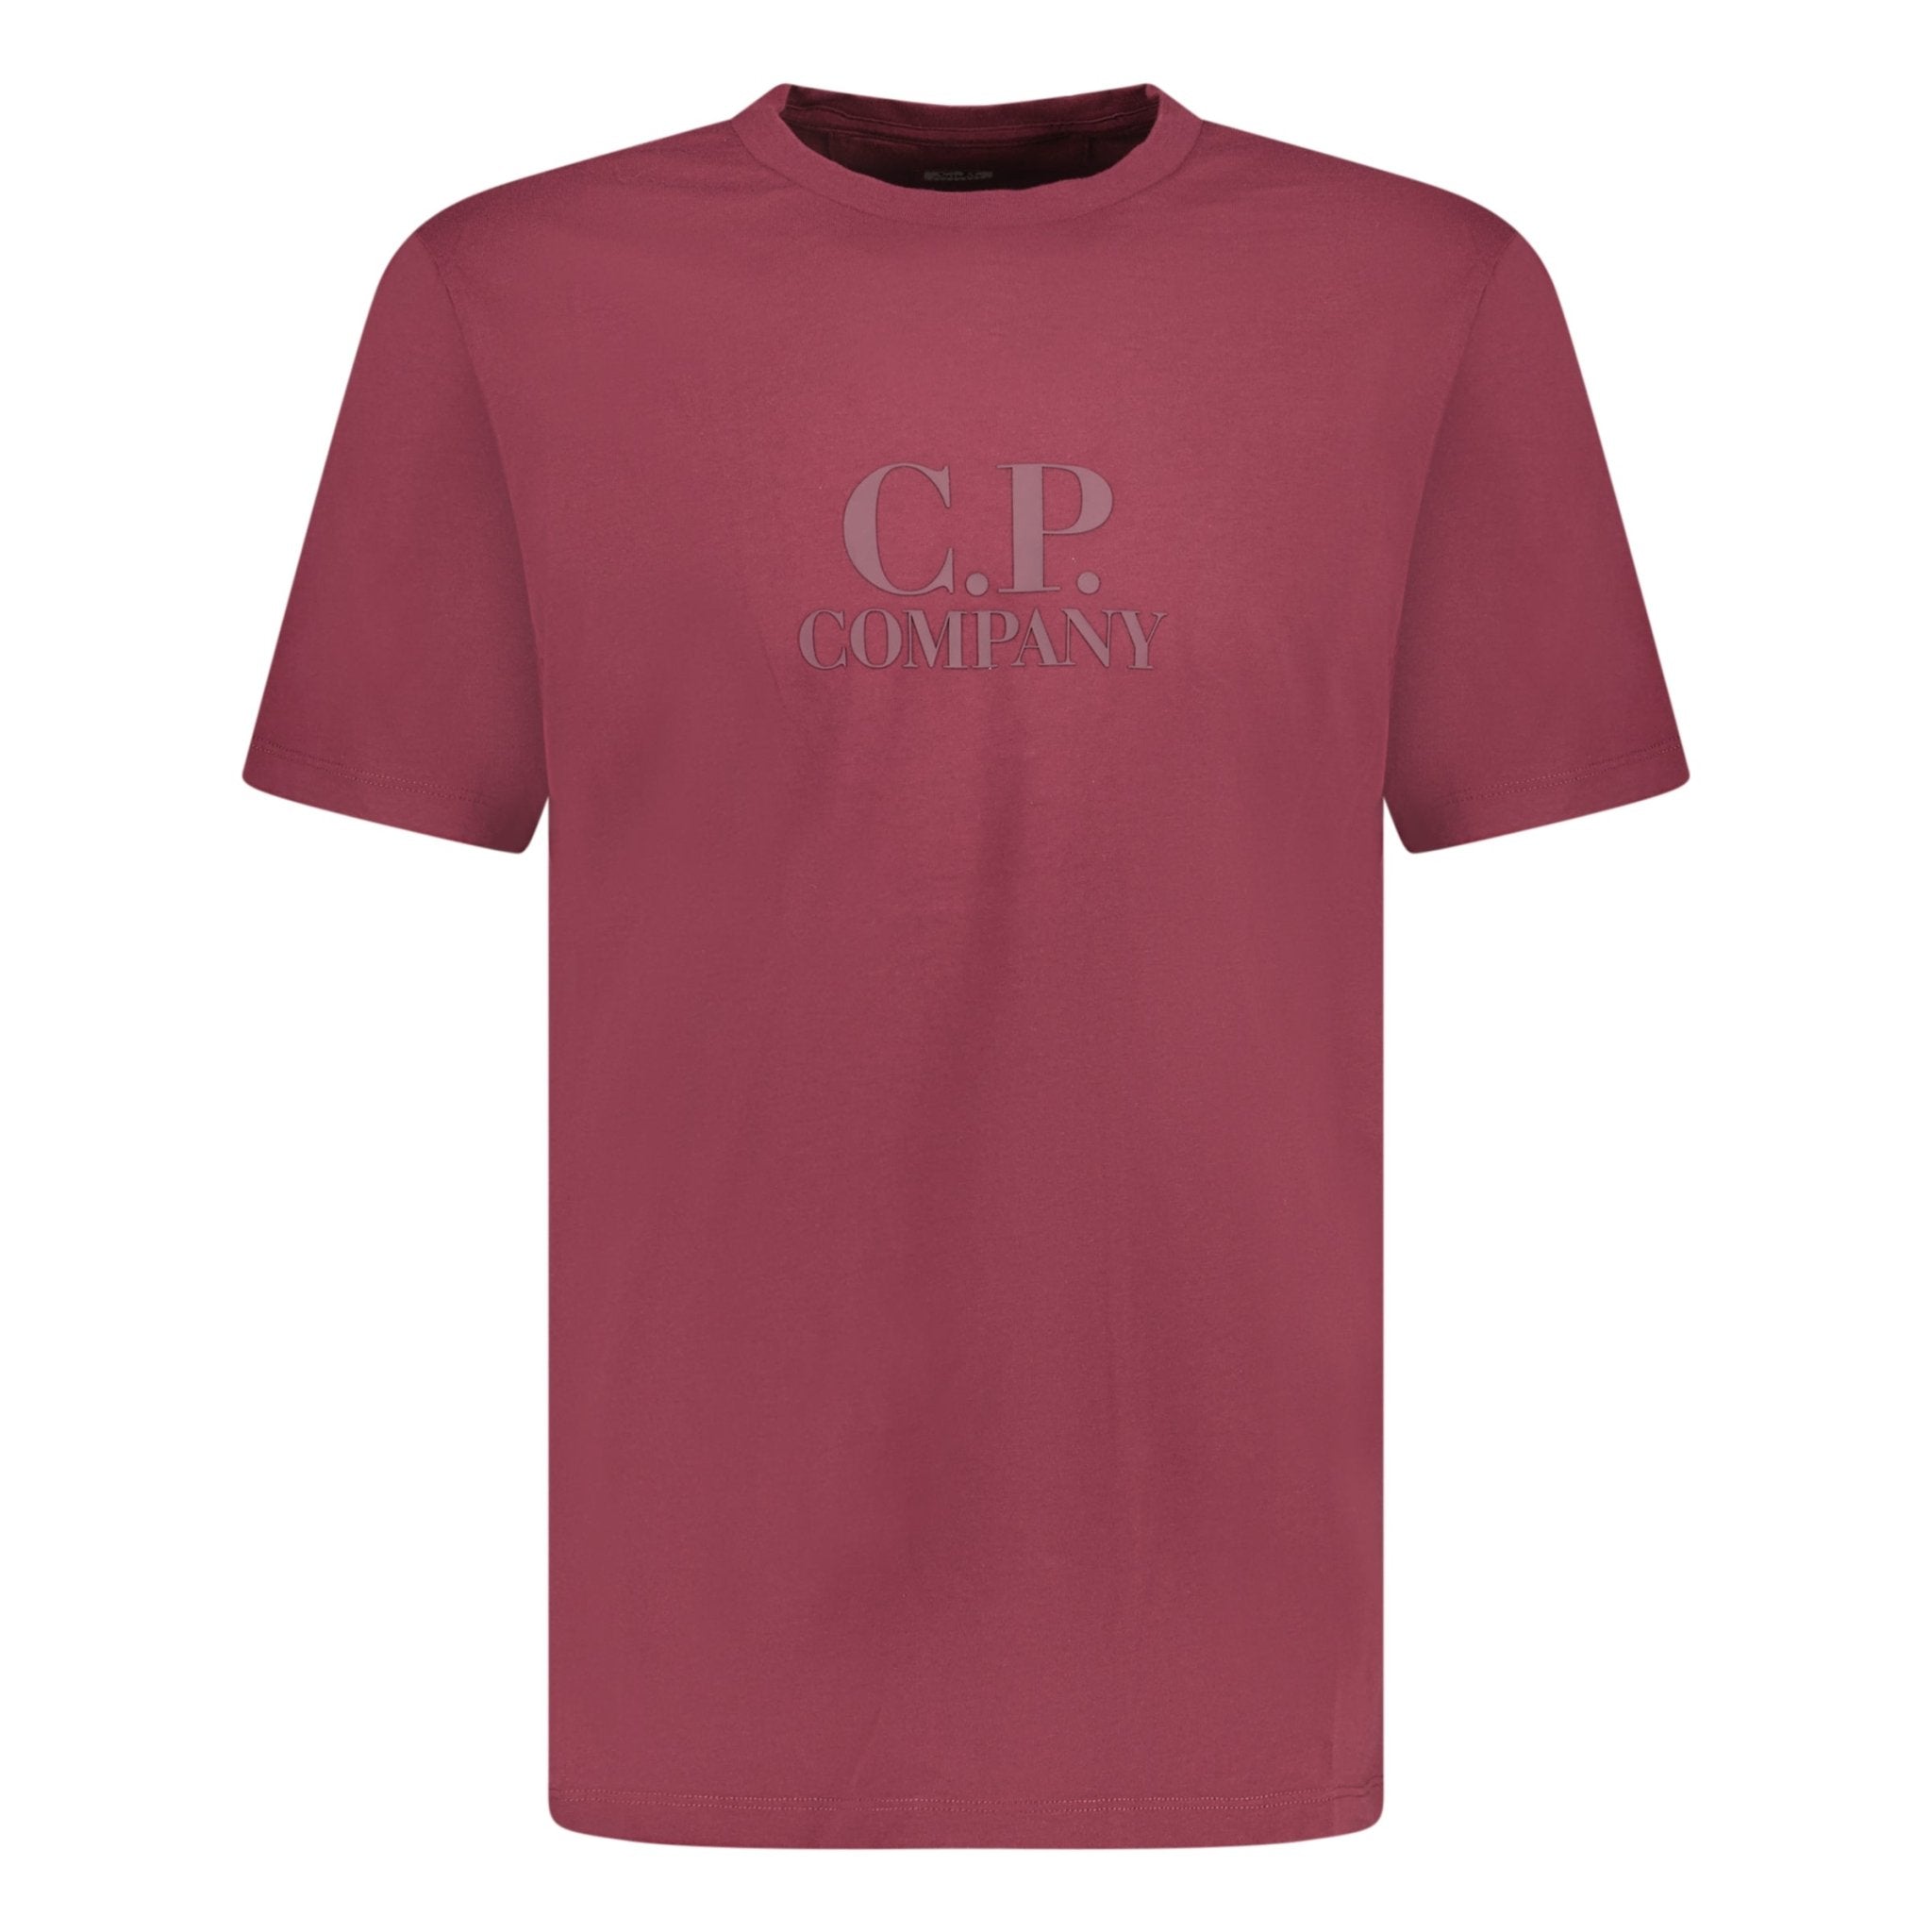 CP Company Jersey T-Shirt Maroon